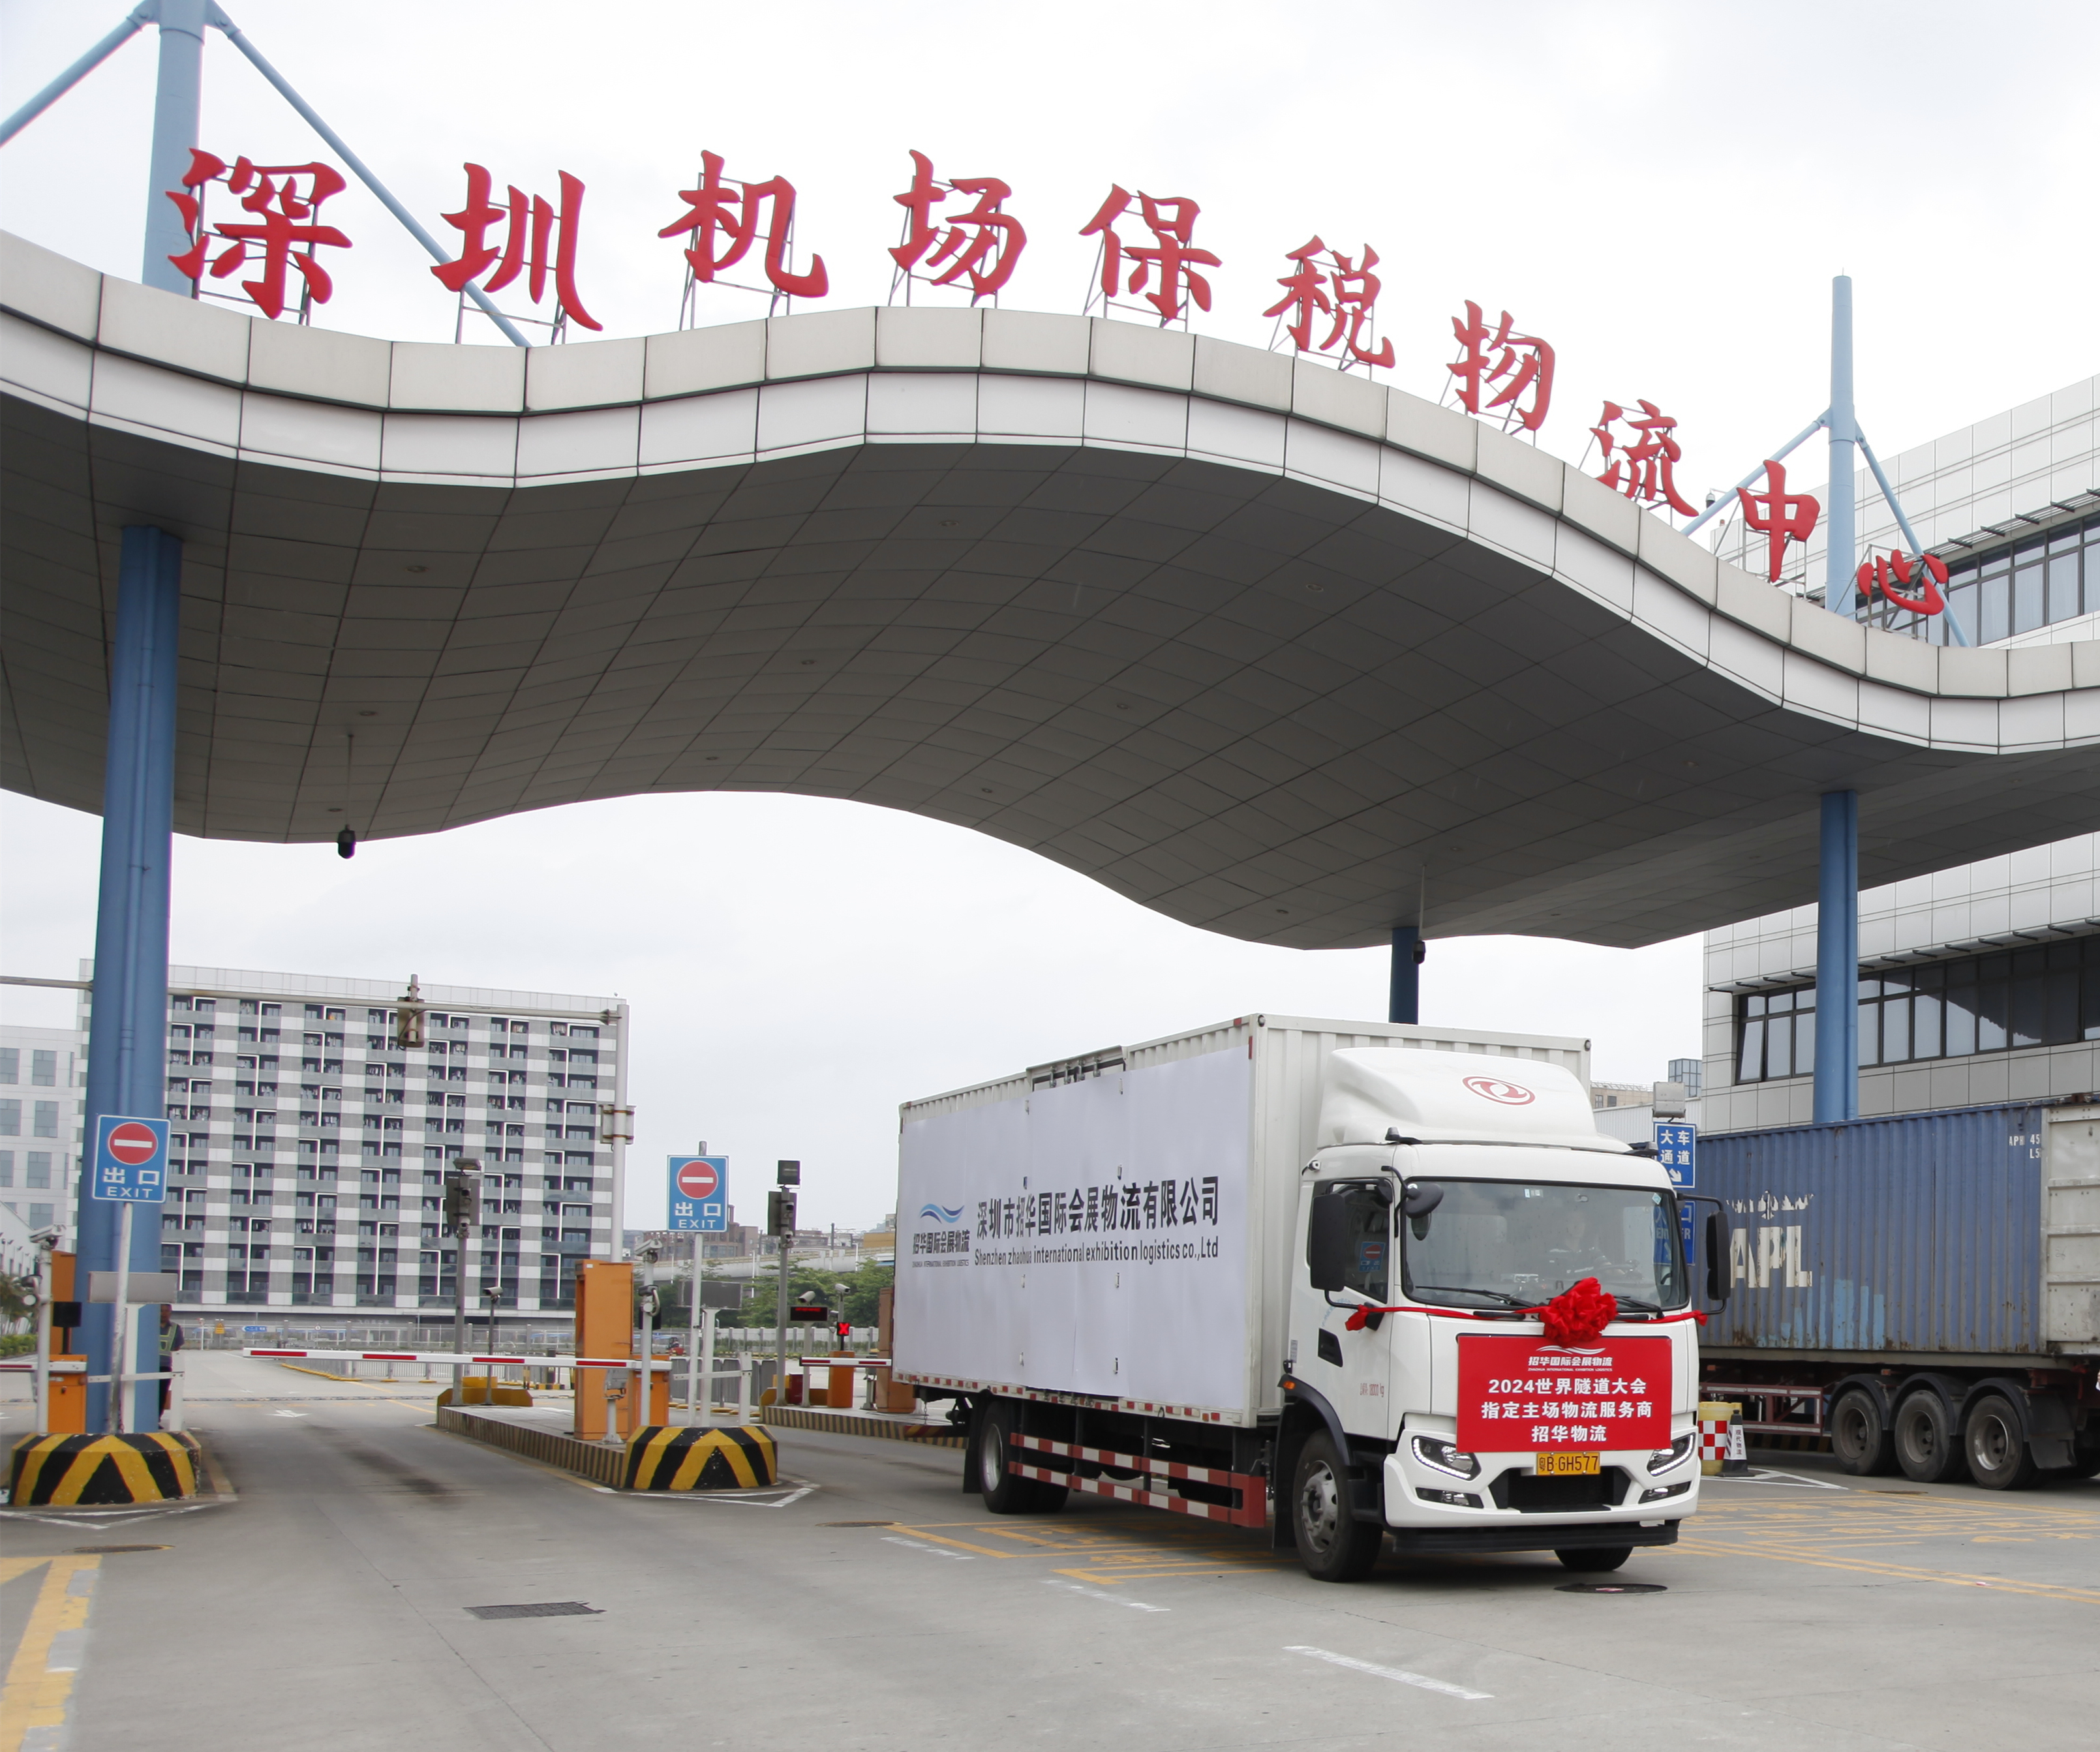 深圳机场进口会展商品保税展示交易业务开通